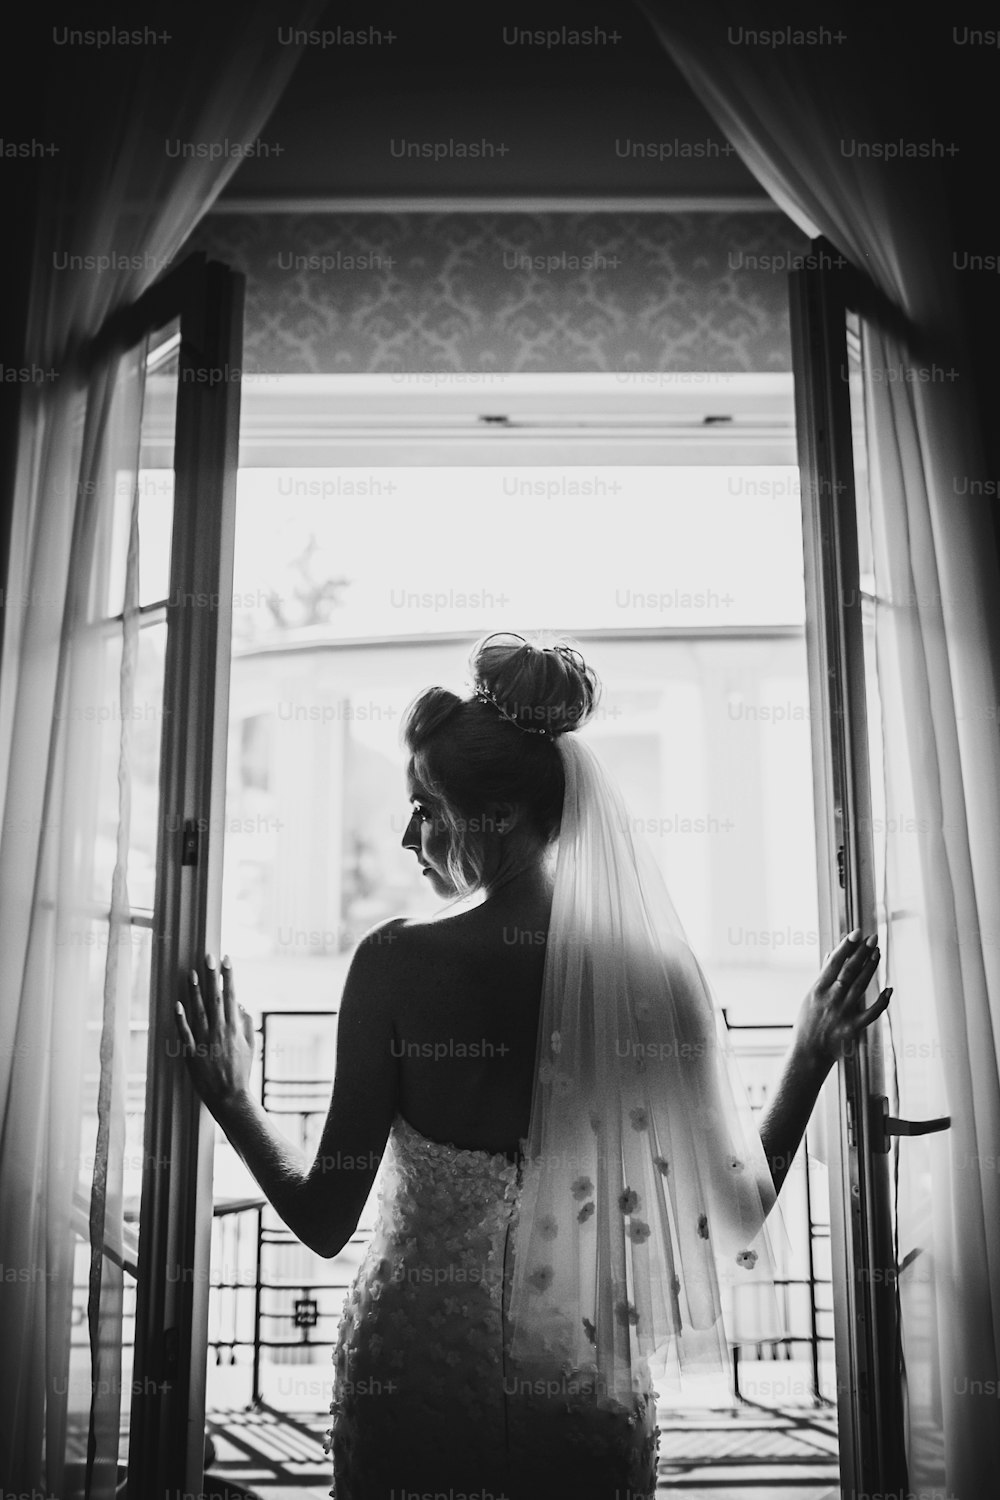 호텔 방의 부드러운 빛에 창문 발코니를 여는 세련된 신부의 실루엣. 흰 가운을 입은 화려한 관능적 인 신부의 뒤. 결혼식 전 아침 준비